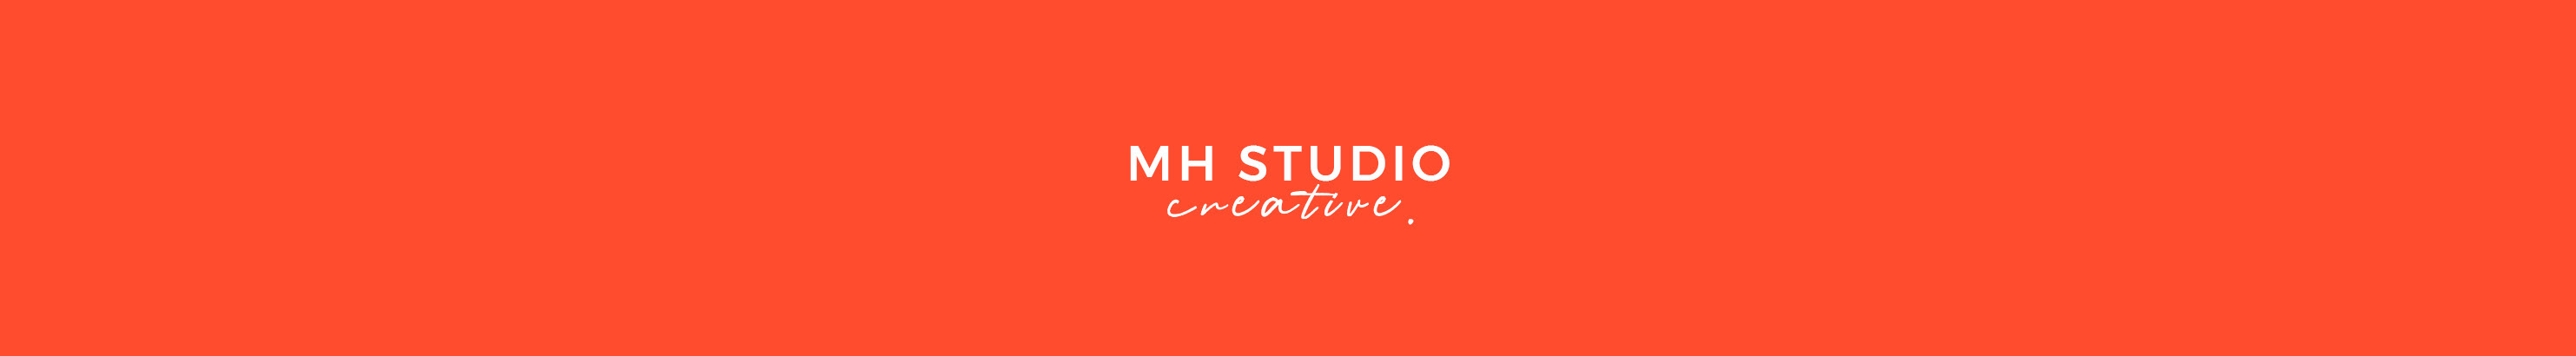 Mohamed HIMEUR (MH Studio)'s profile banner